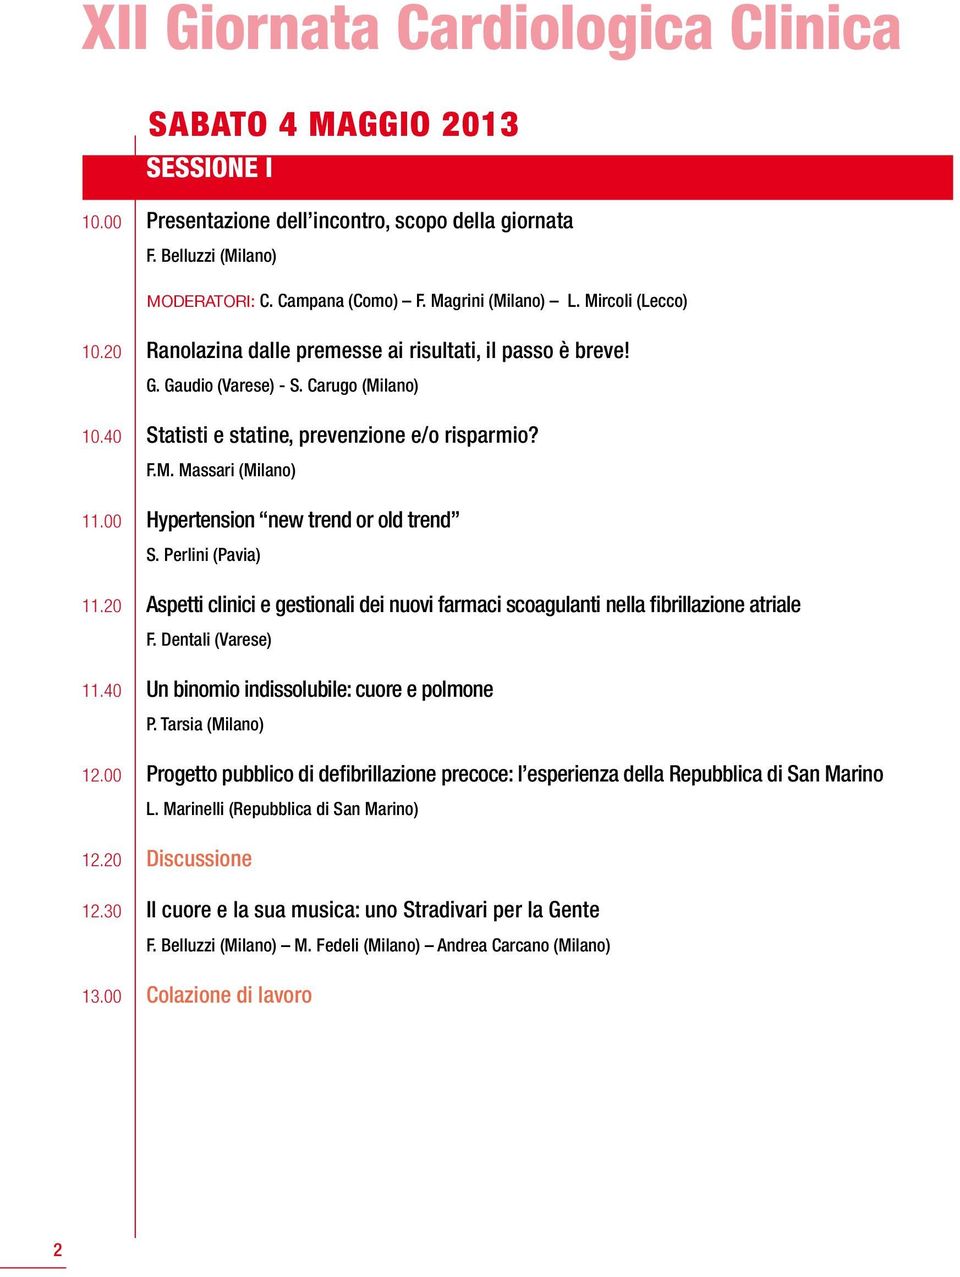 00 Hypertension new trend or old trend S. Perlini (Pavia) 11.20 Aspetti clinici e gestionali dei nuovi farmaci scoagulanti nella fibrillazione atriale F. Dentali (Varese) 11.